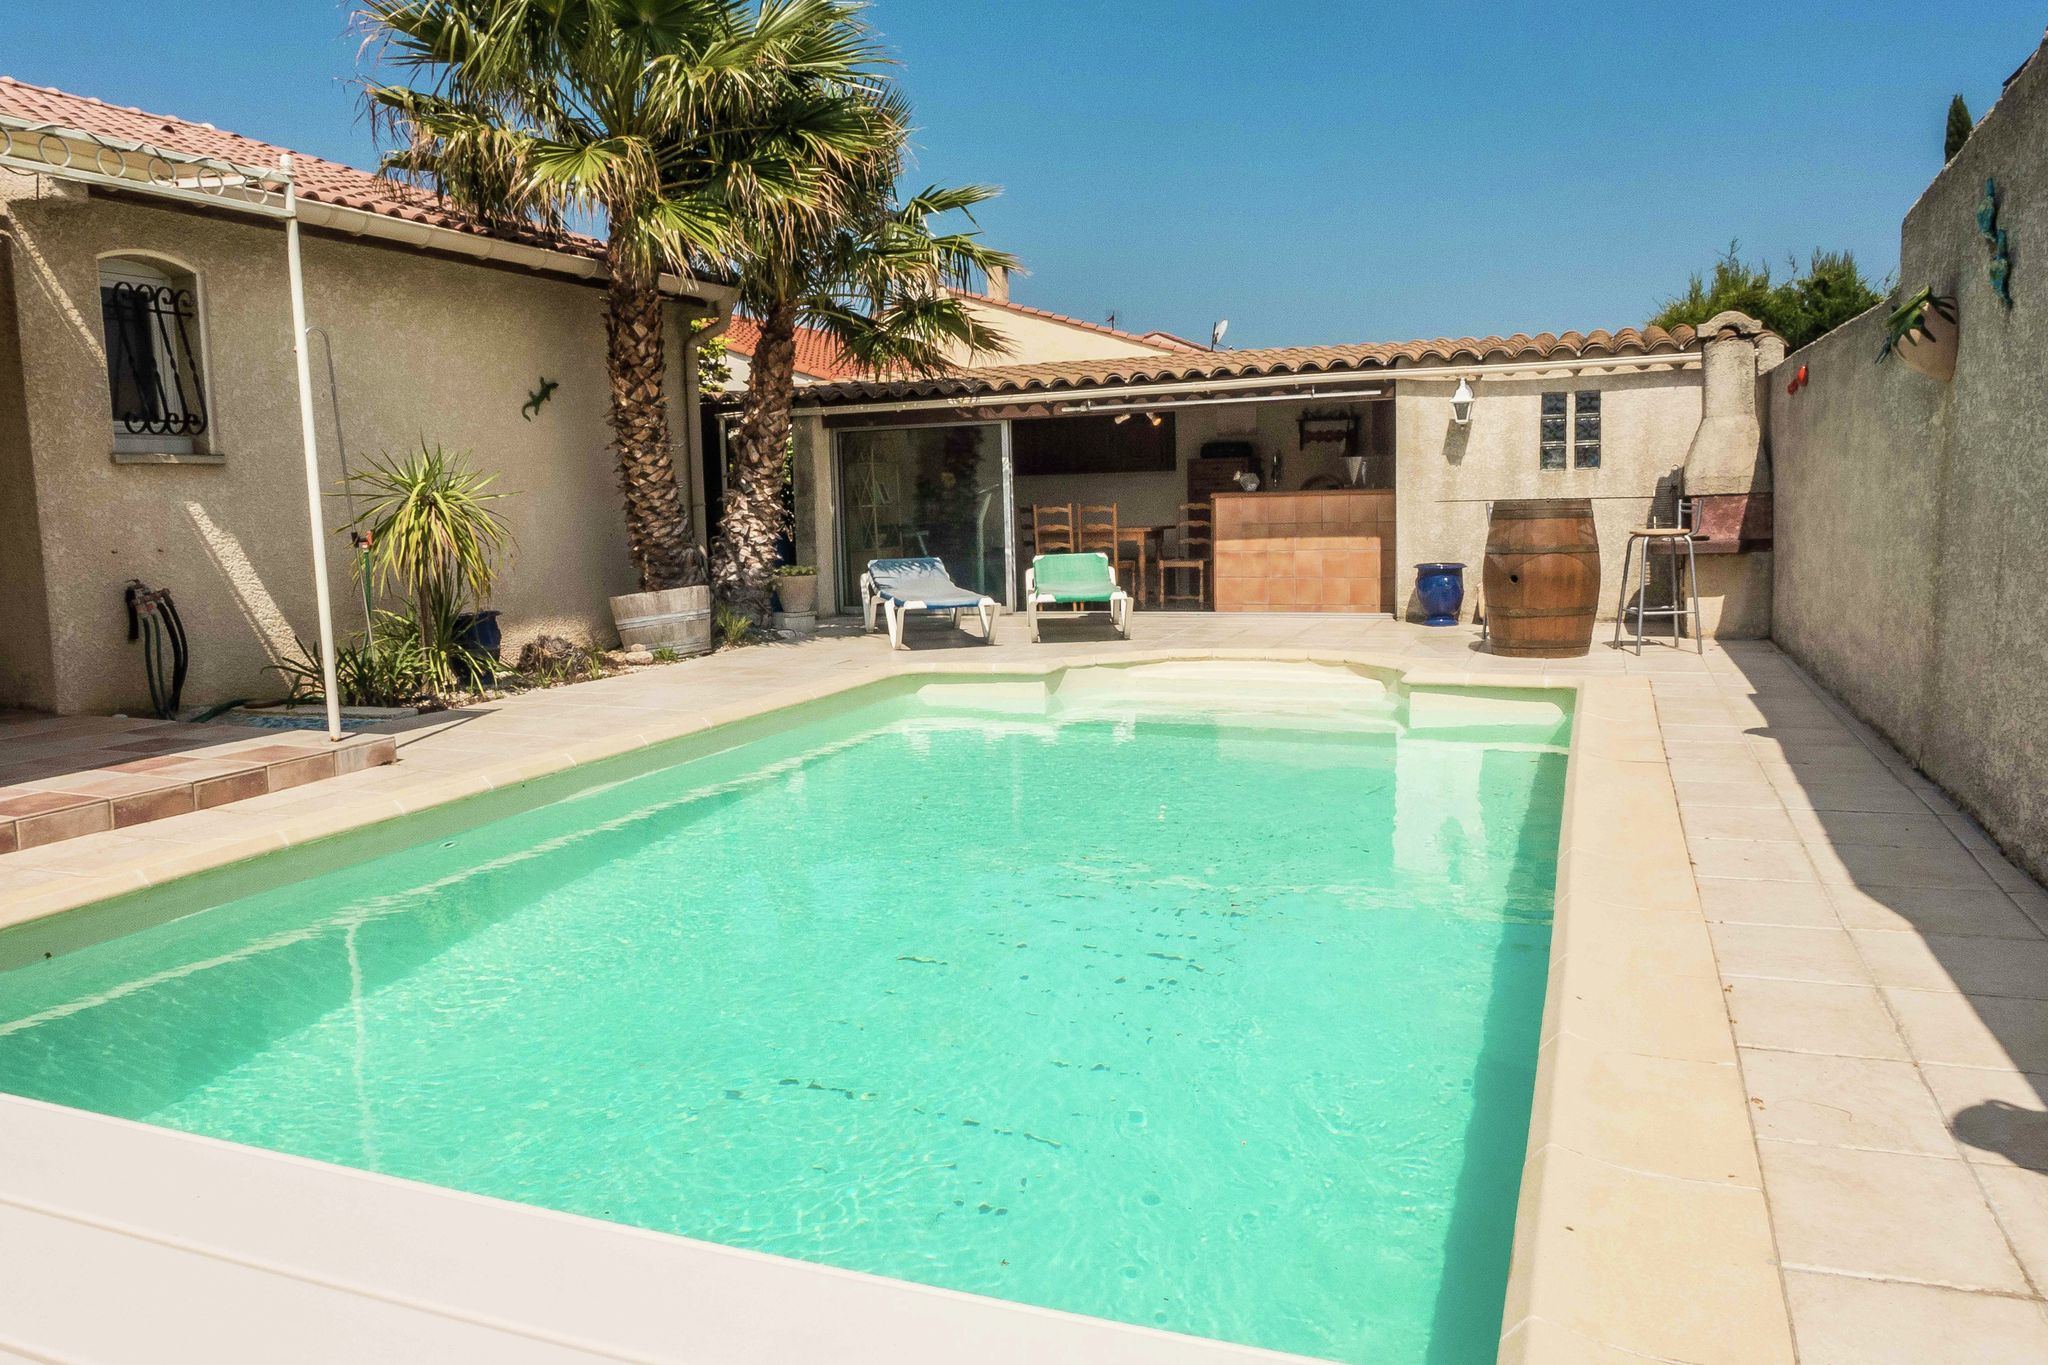 Maison de vacances sensationnelle avec piscine à Narbonne